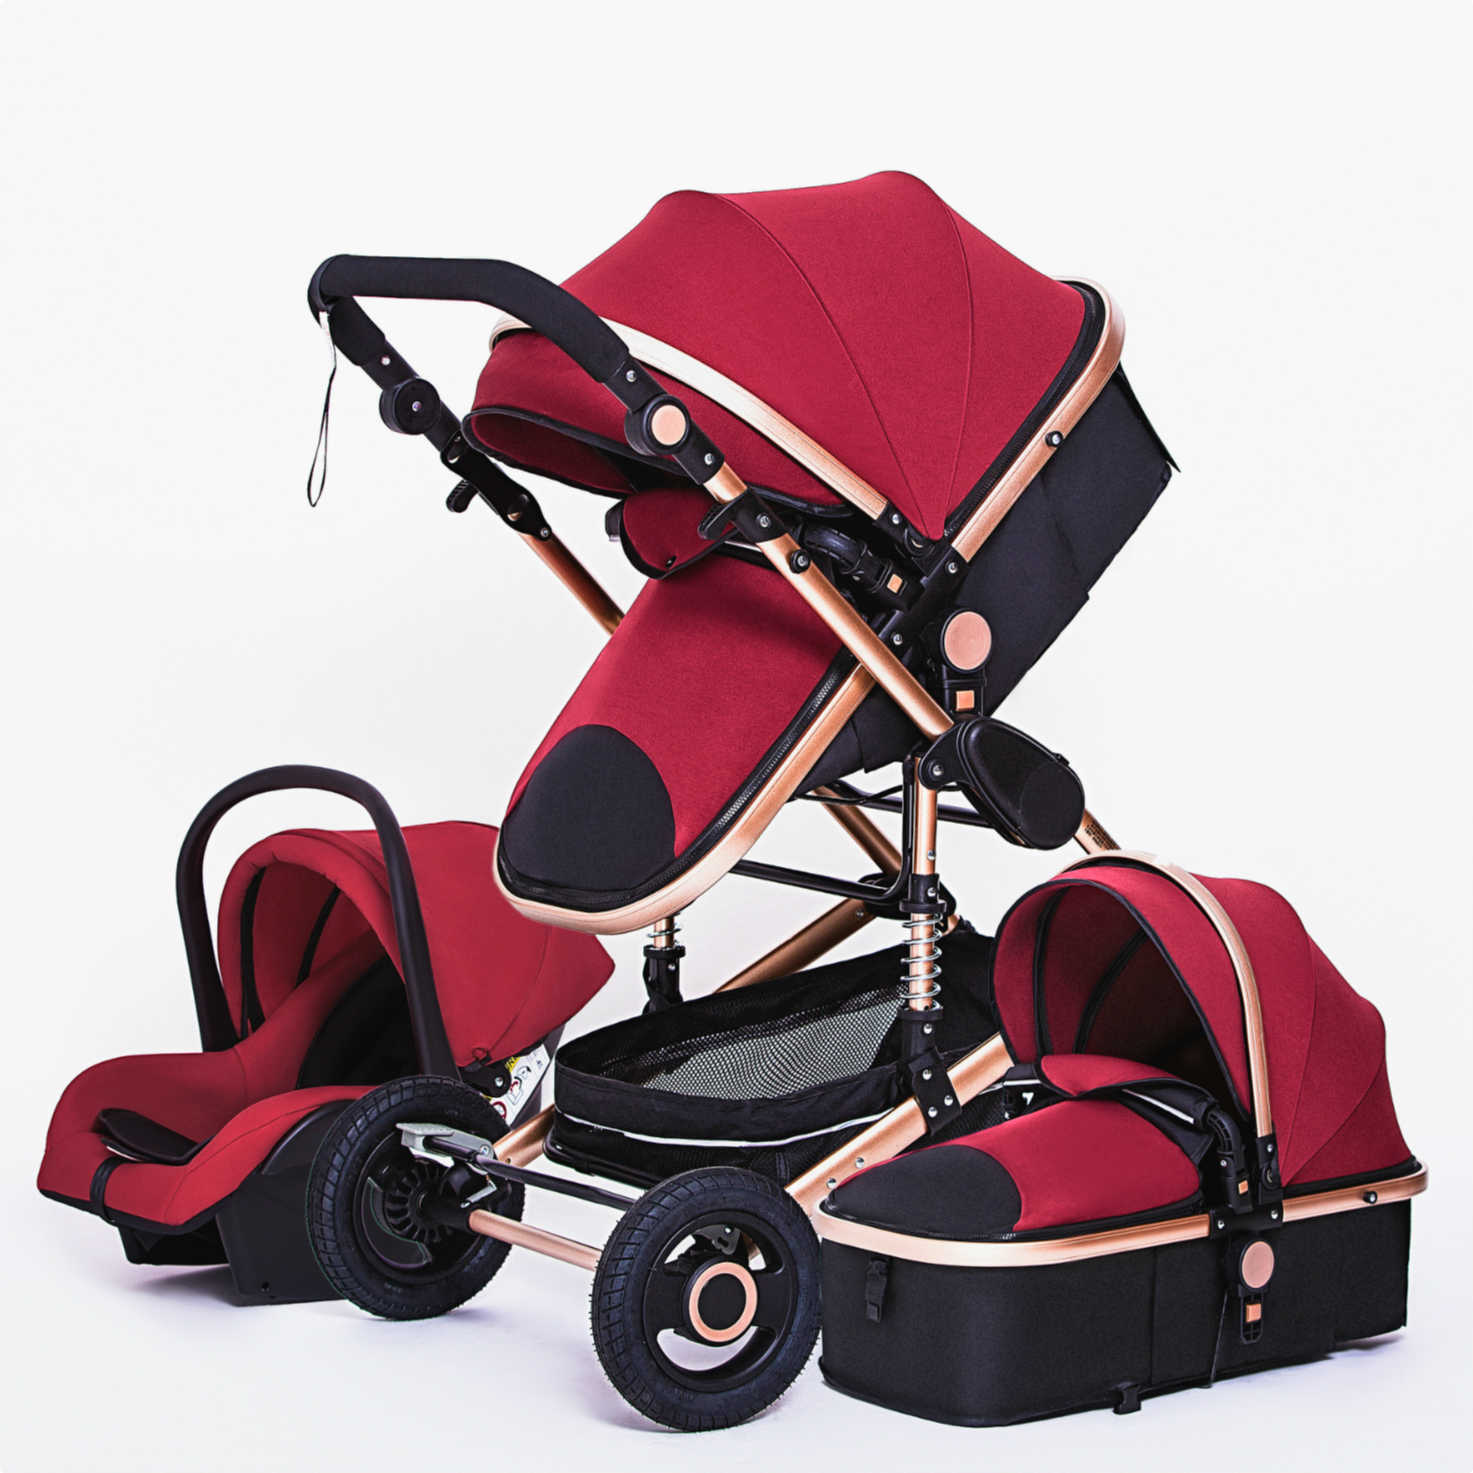 Lüks bebek arabası 3, 1 portatif seyahat bebek arabası katlanır çocuk arabası alüminyum çerçeve yeni doğan bebek için yüksek peyzaj arabası L230625